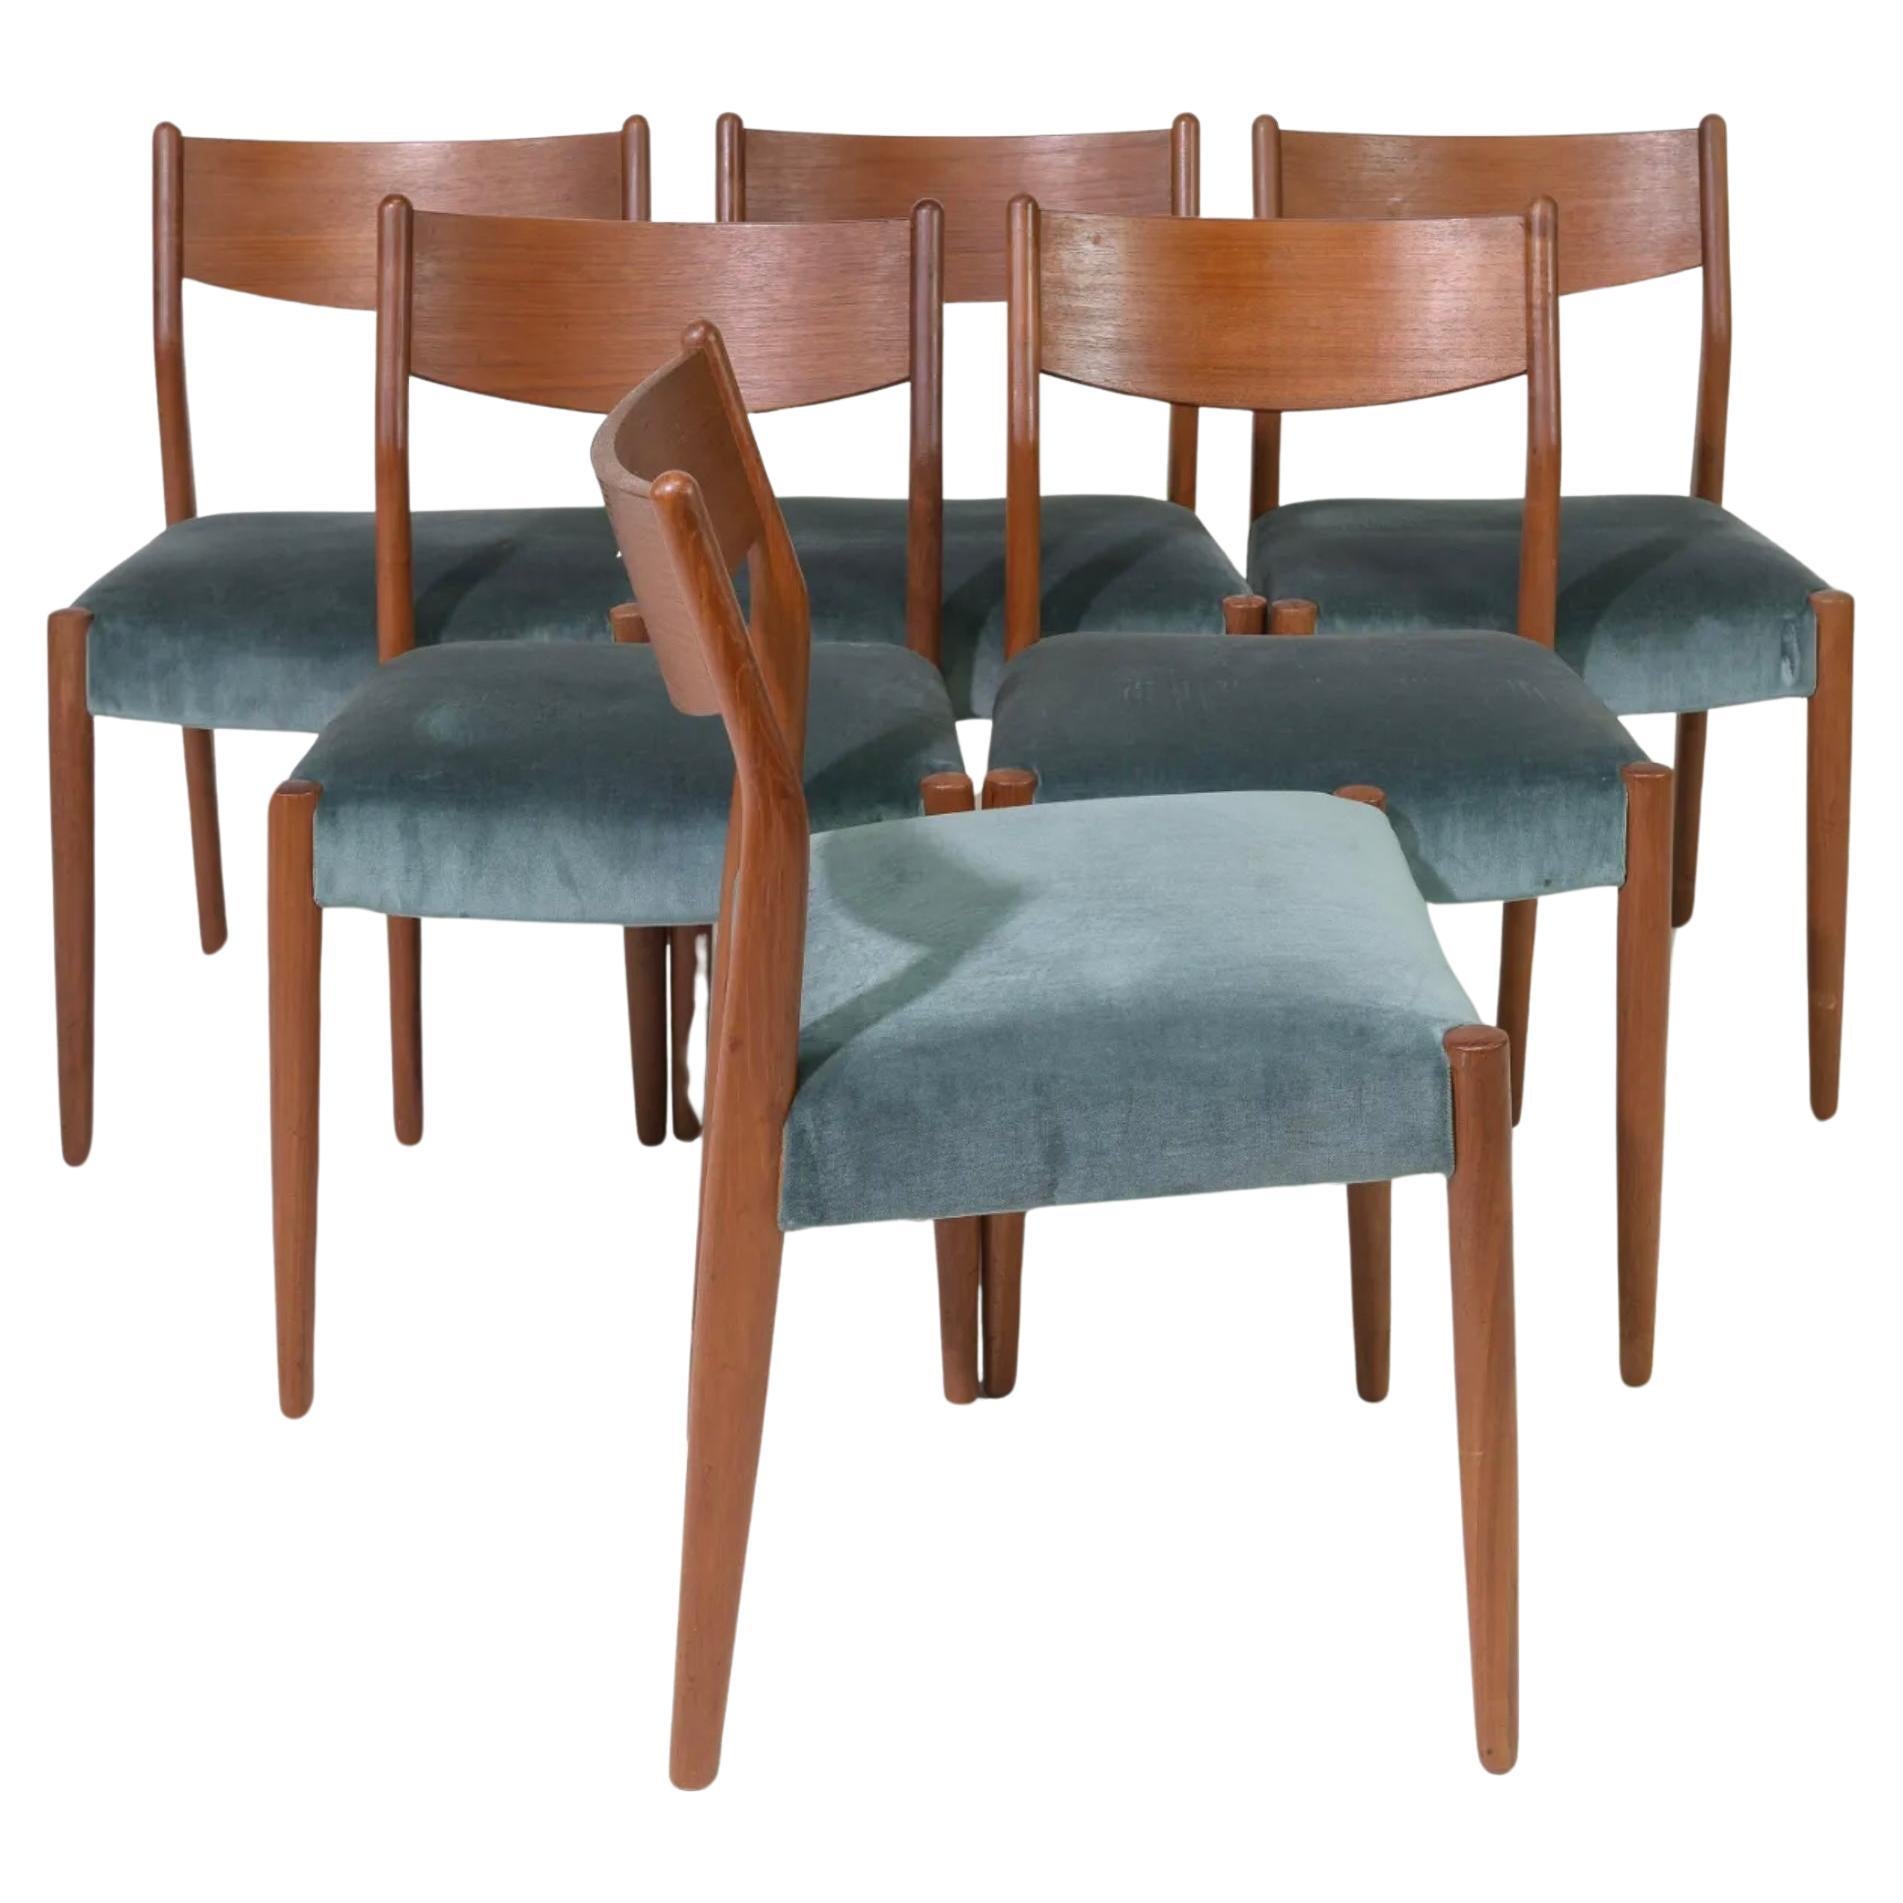 Ensemble de 6 chaises de salle à manger modernes danoises en teck avec revêtement en mohair. Chaises de salle à manger danoises en teck massif. Ensemble de chaises très propres et prêtes à l'emploi. Fabriqué au Danemark. Situé à Brooklyn NYC.